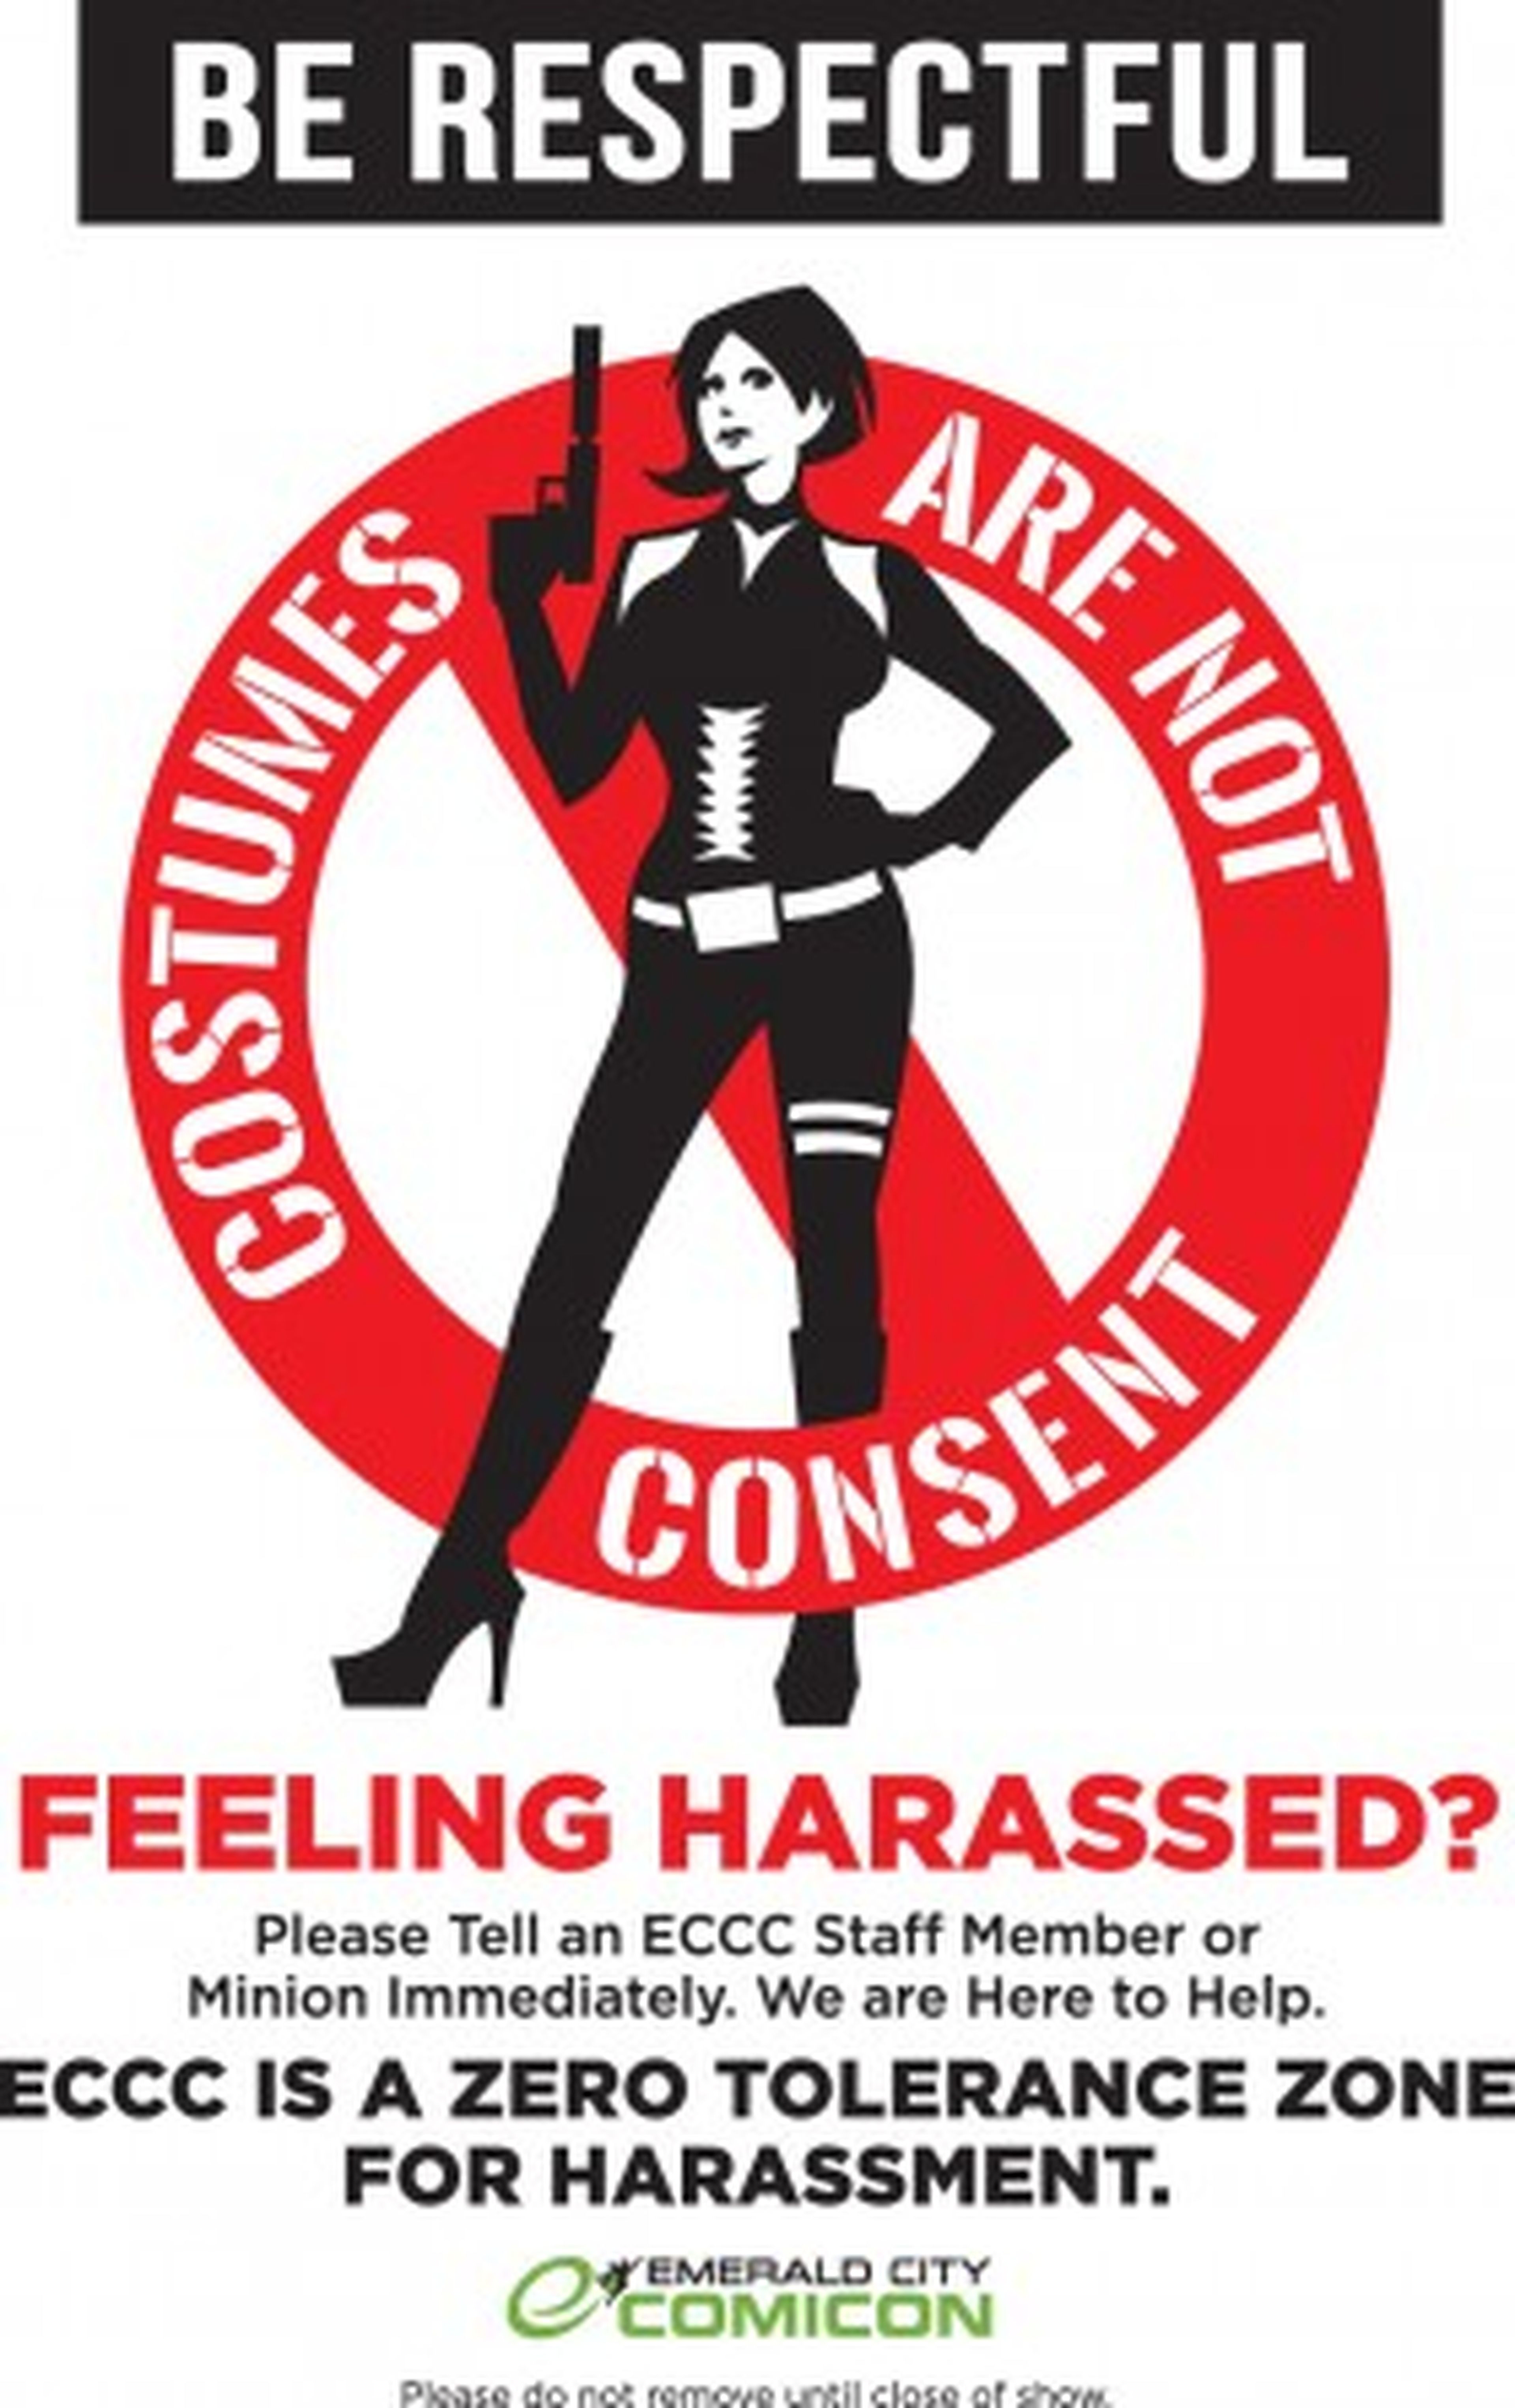 La Comic Con, en contra del acoso sexual a cosplayers